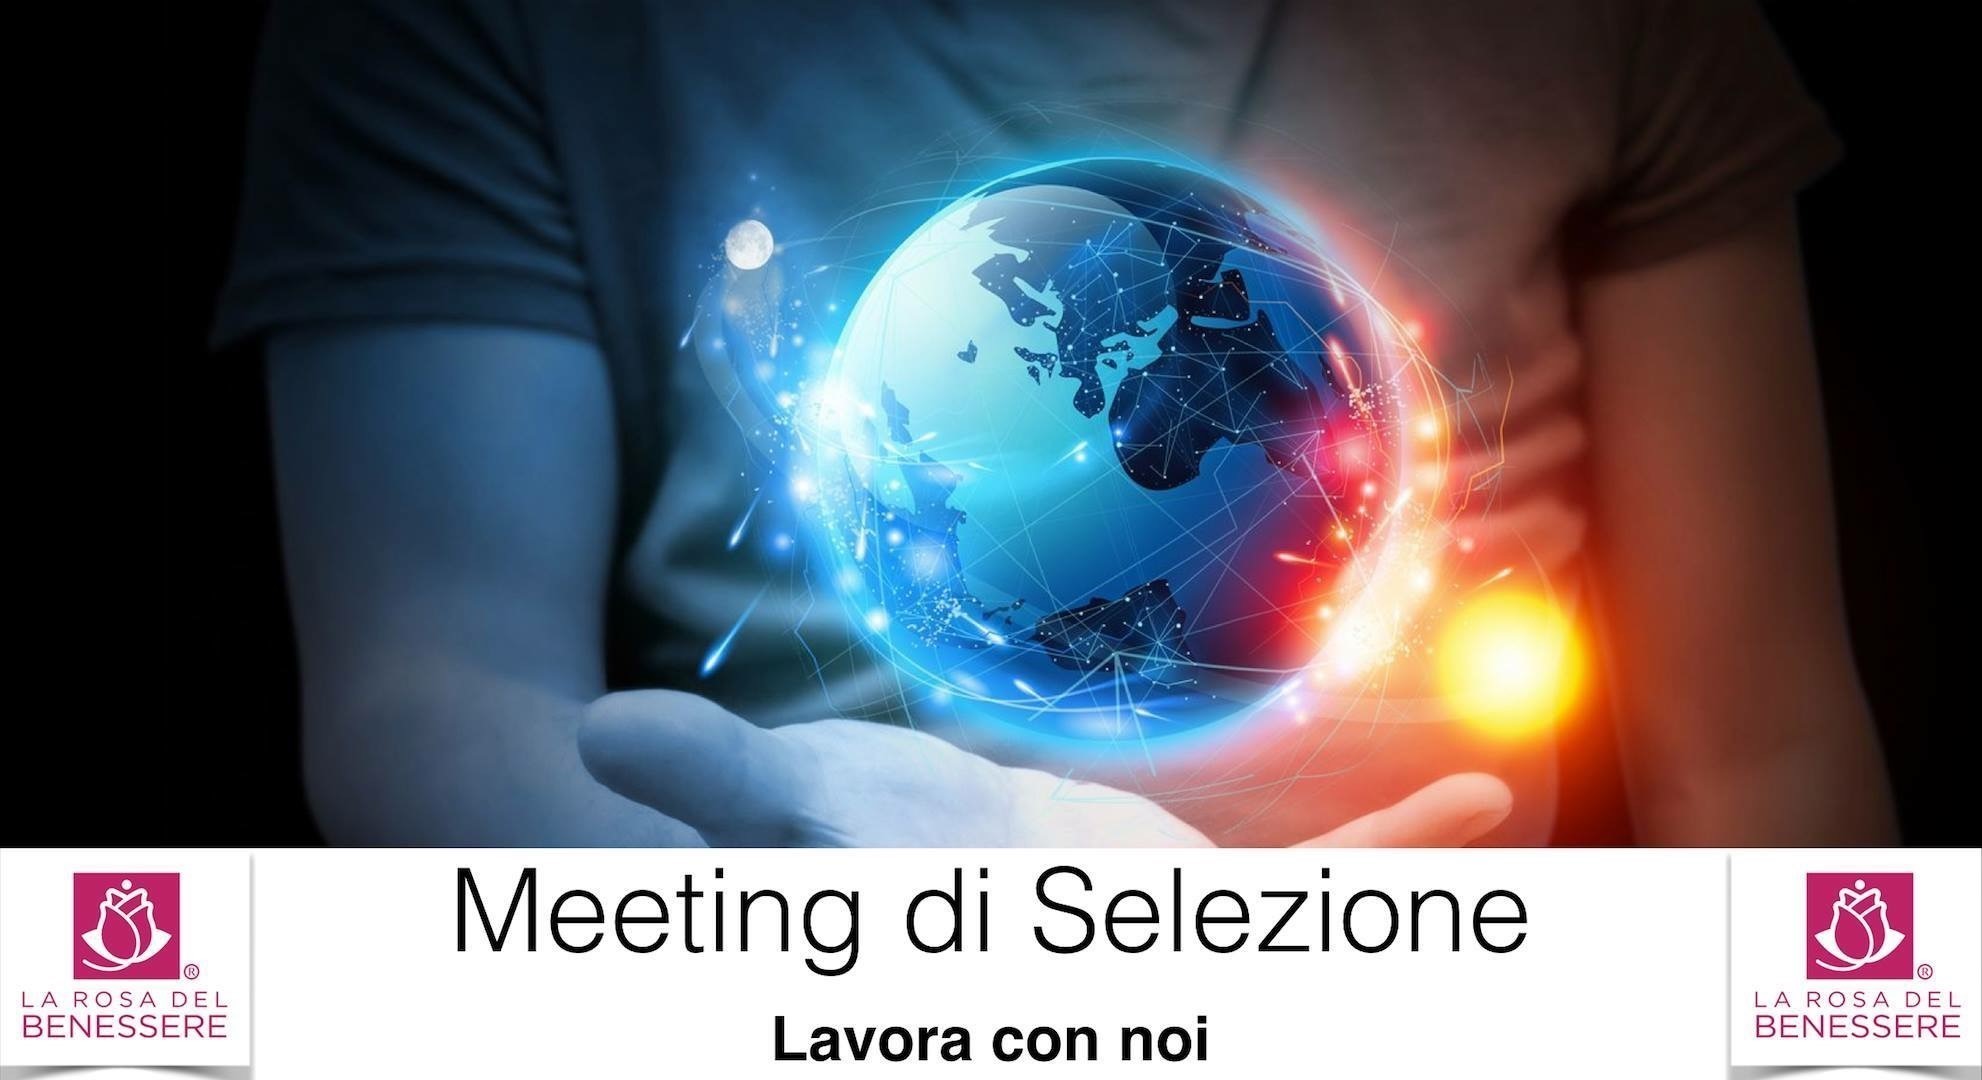 MEETING DI SELEZIONE